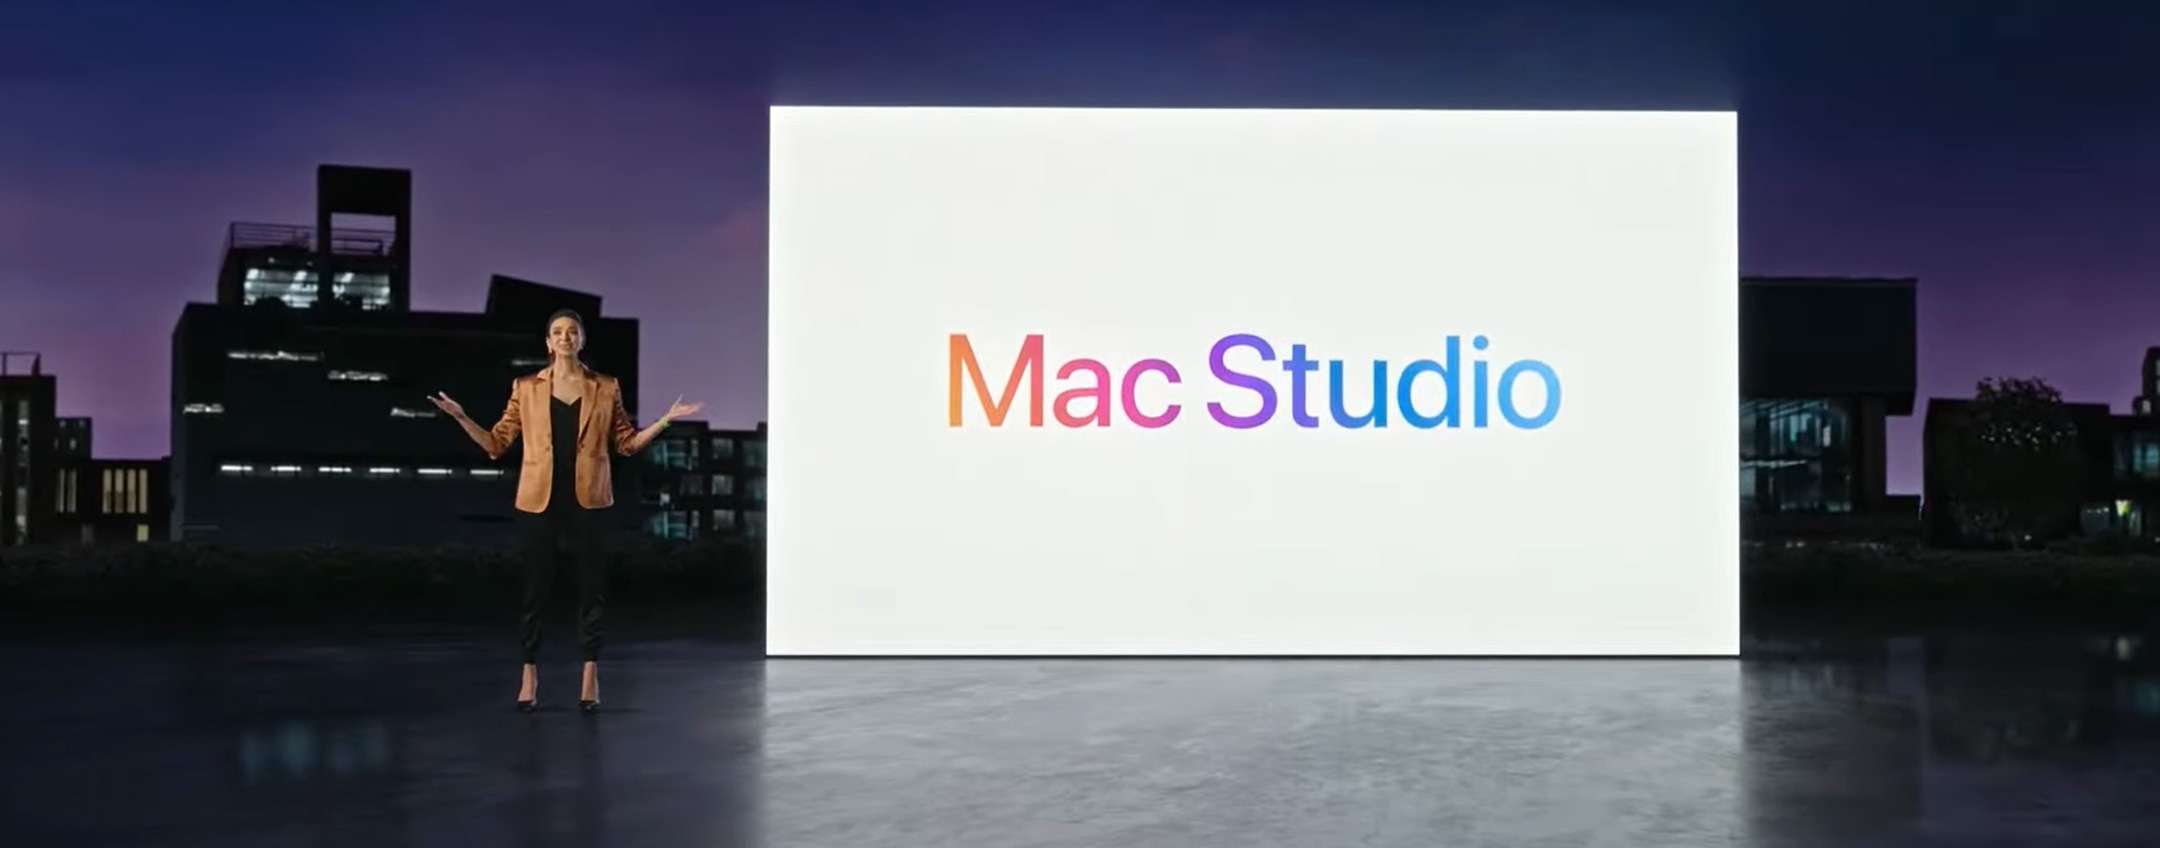 Quanto costa il Mac Studio super accessoriato?